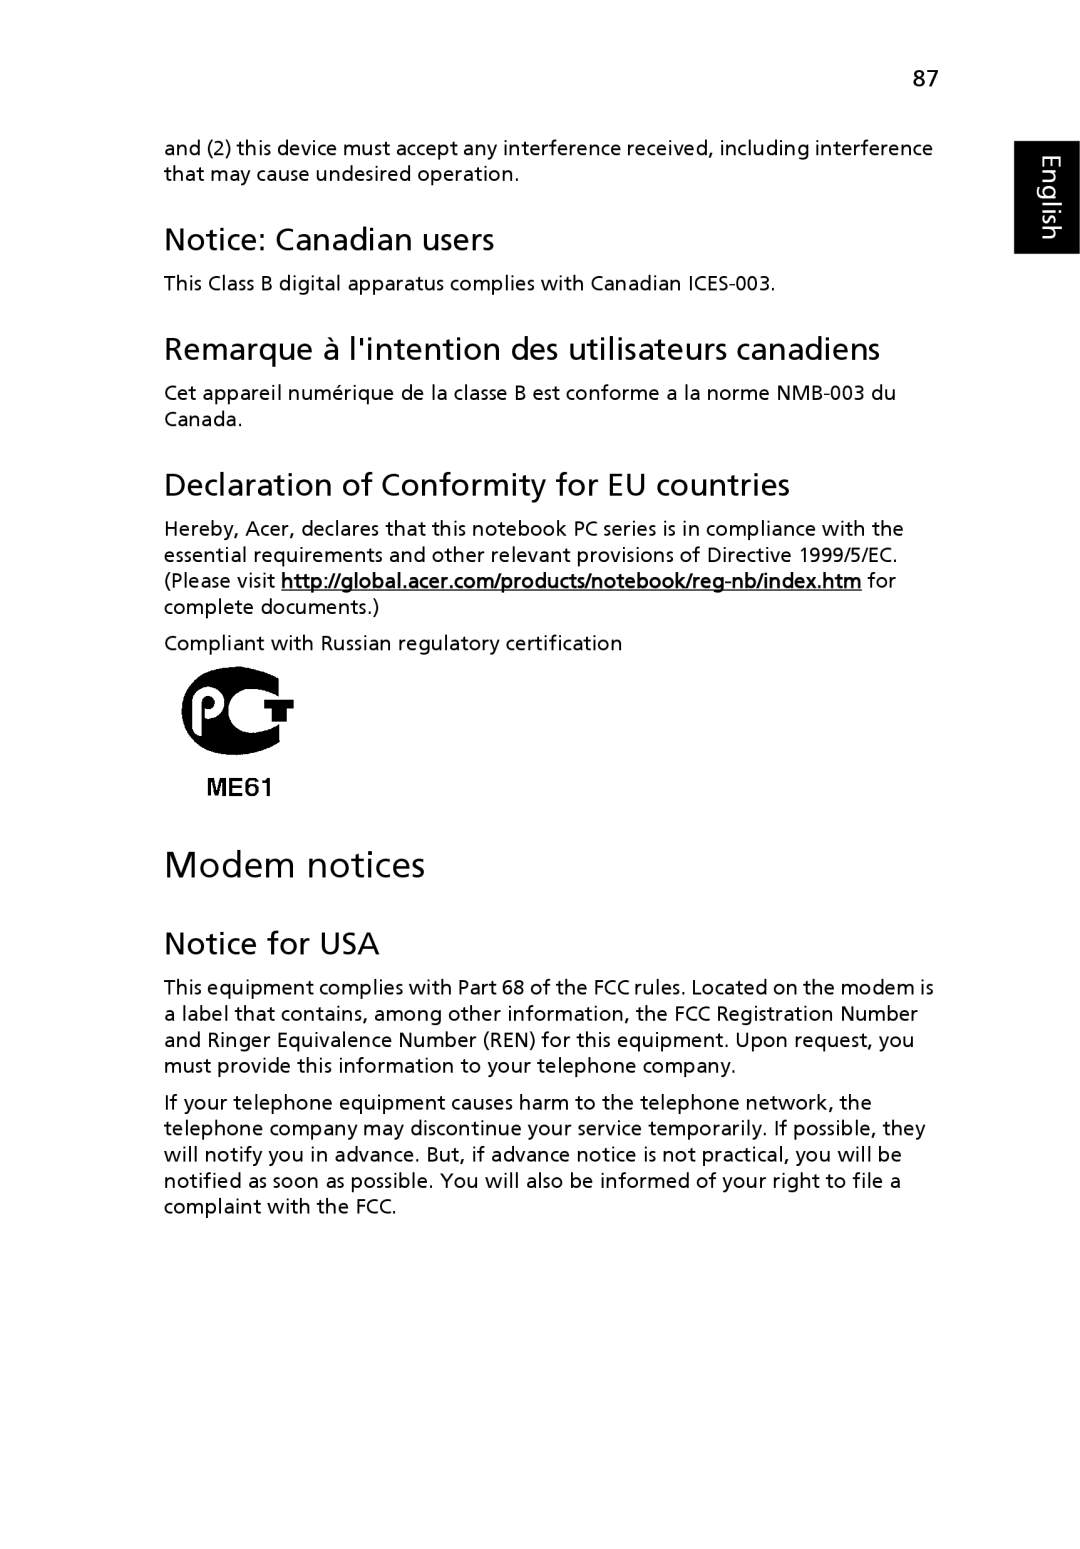 Acer 7320 Modem notices, Remarque à lintention des utilisateurs canadiens, Declaration of Conformity for EU countries 